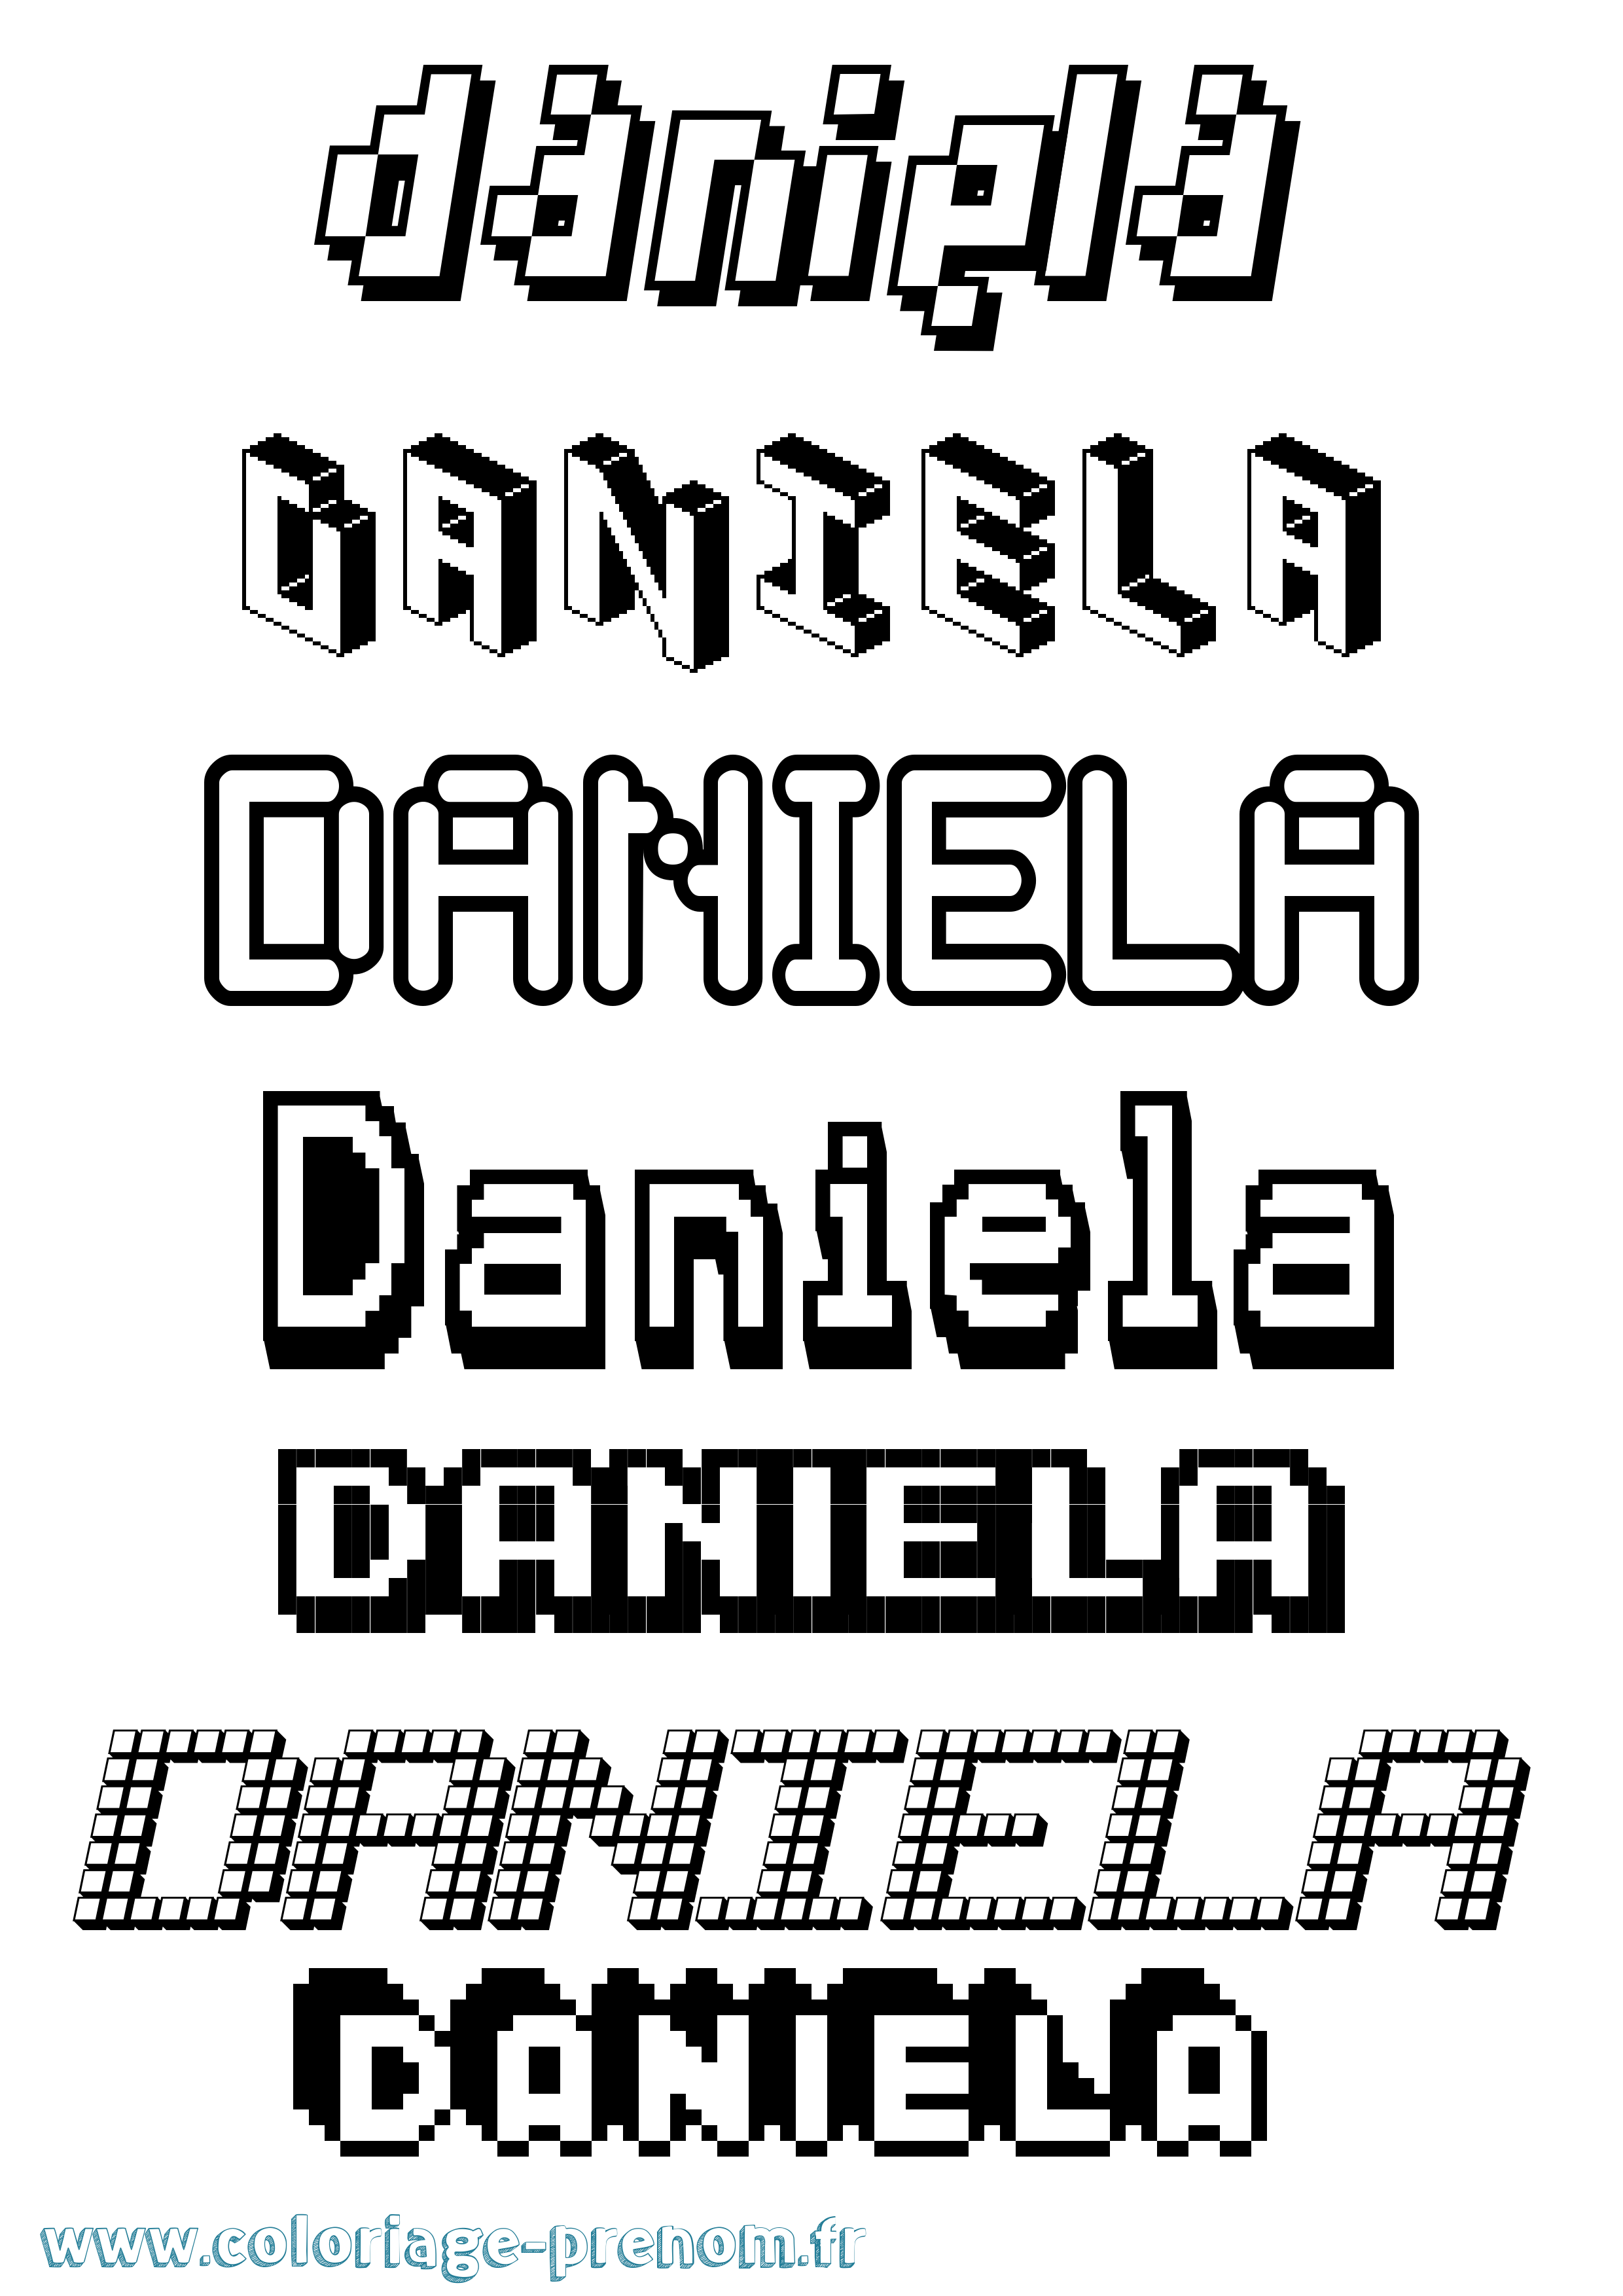 Coloriage prénom Daniela